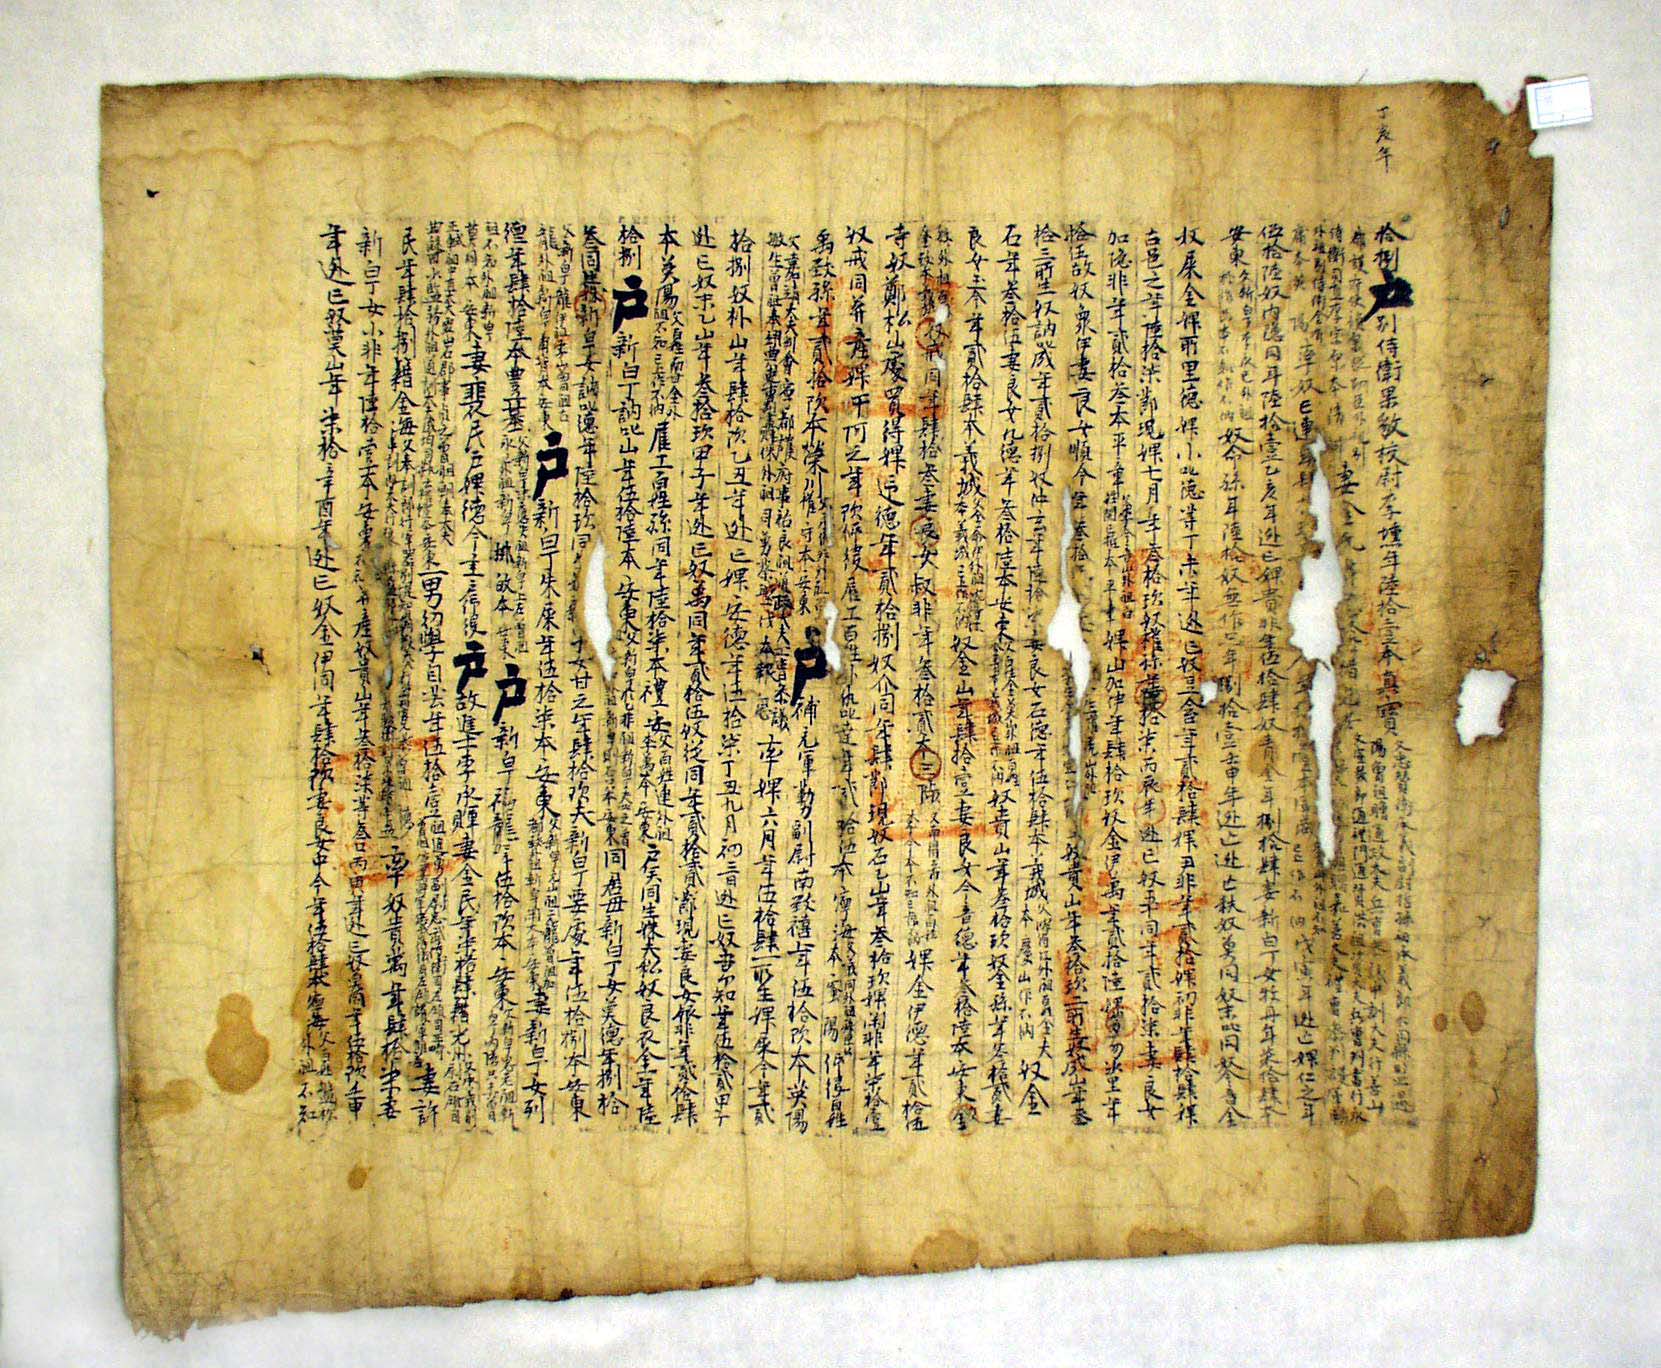 1528년에 안동부에서 수급자 미상에게 호구 파악을 위해 작성해 놓은 호적단편